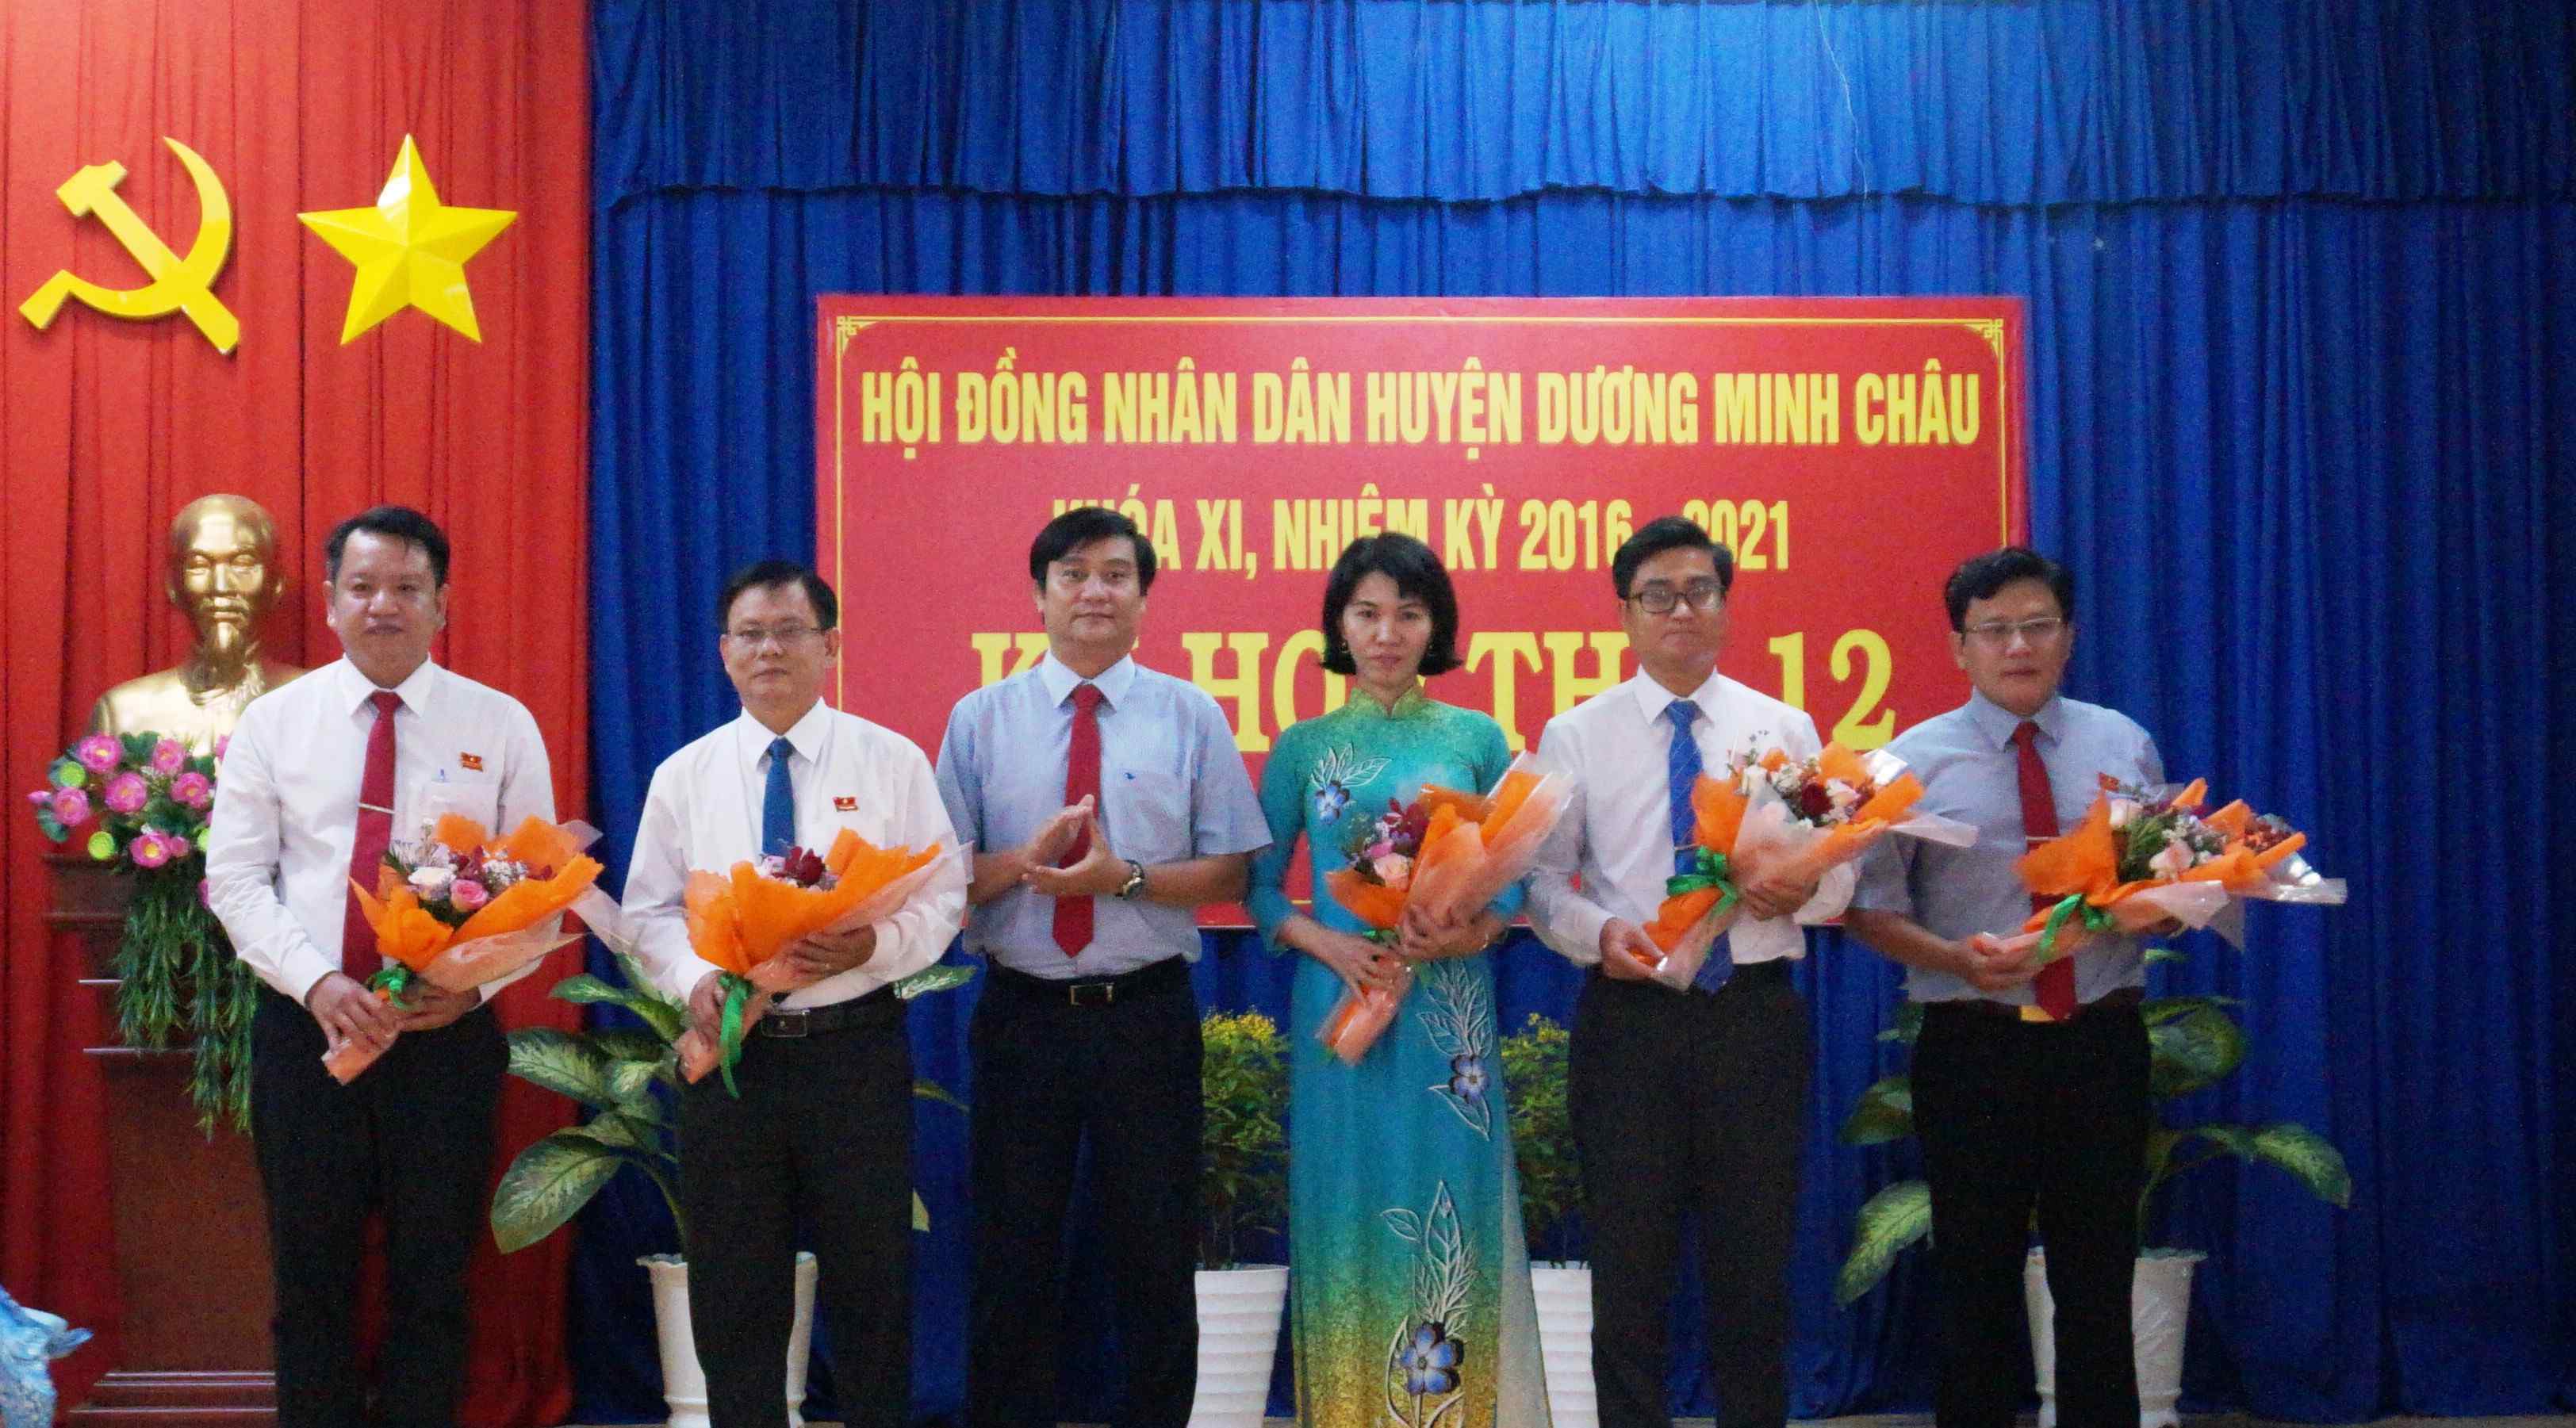 Hội đồng nhân dân huyện Dương Minh Châu  bầu bổ sung nhiều chức vụ quan trọng